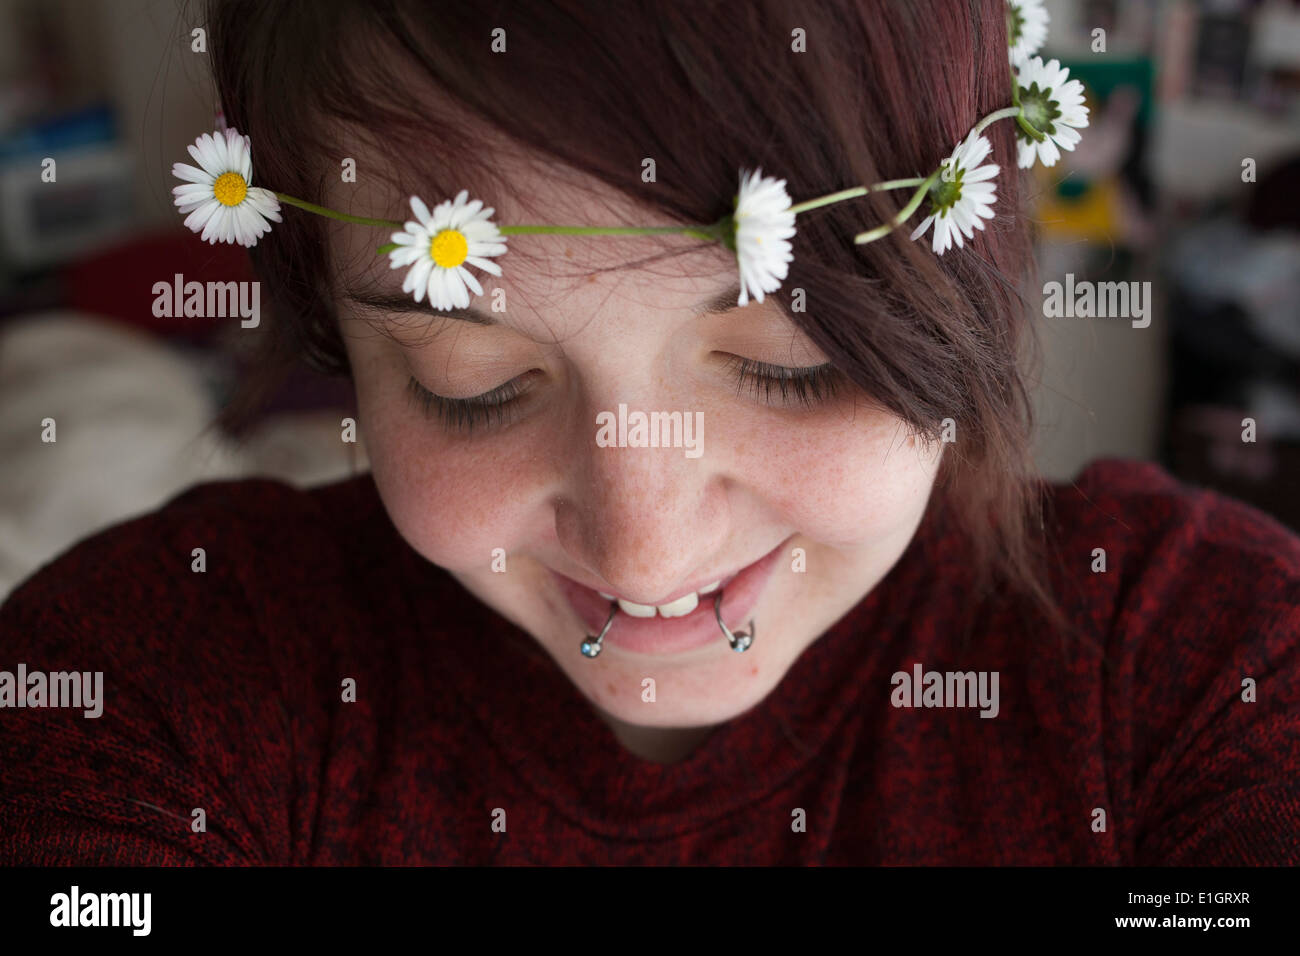 Mujer joven sonriente con una cadena de margarita Foto de stock